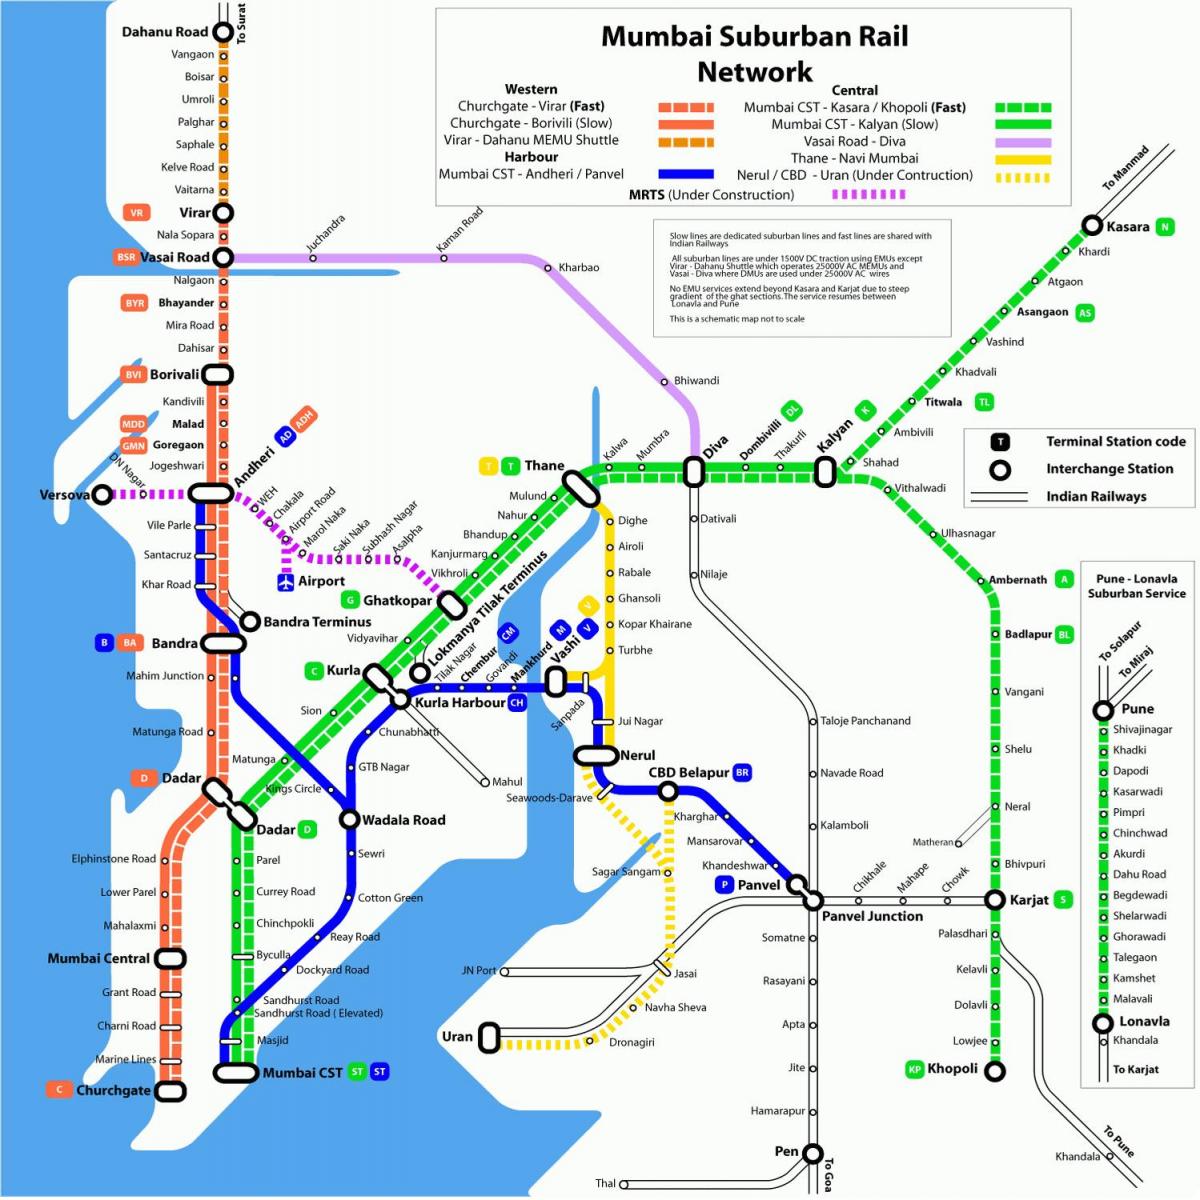 નકશો મુંબઇ લોકલ ટ્રેન